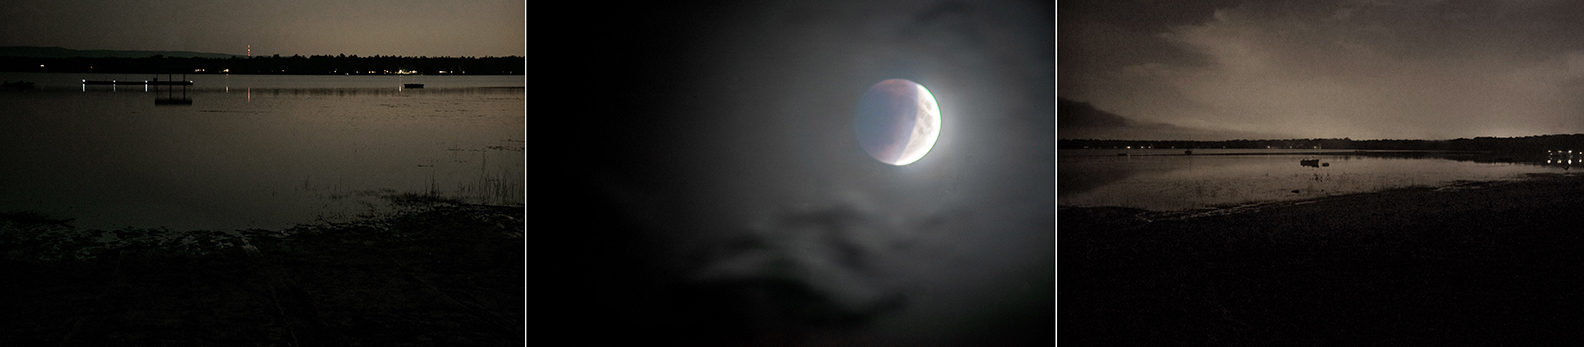 Lunar Eclipse, 2015